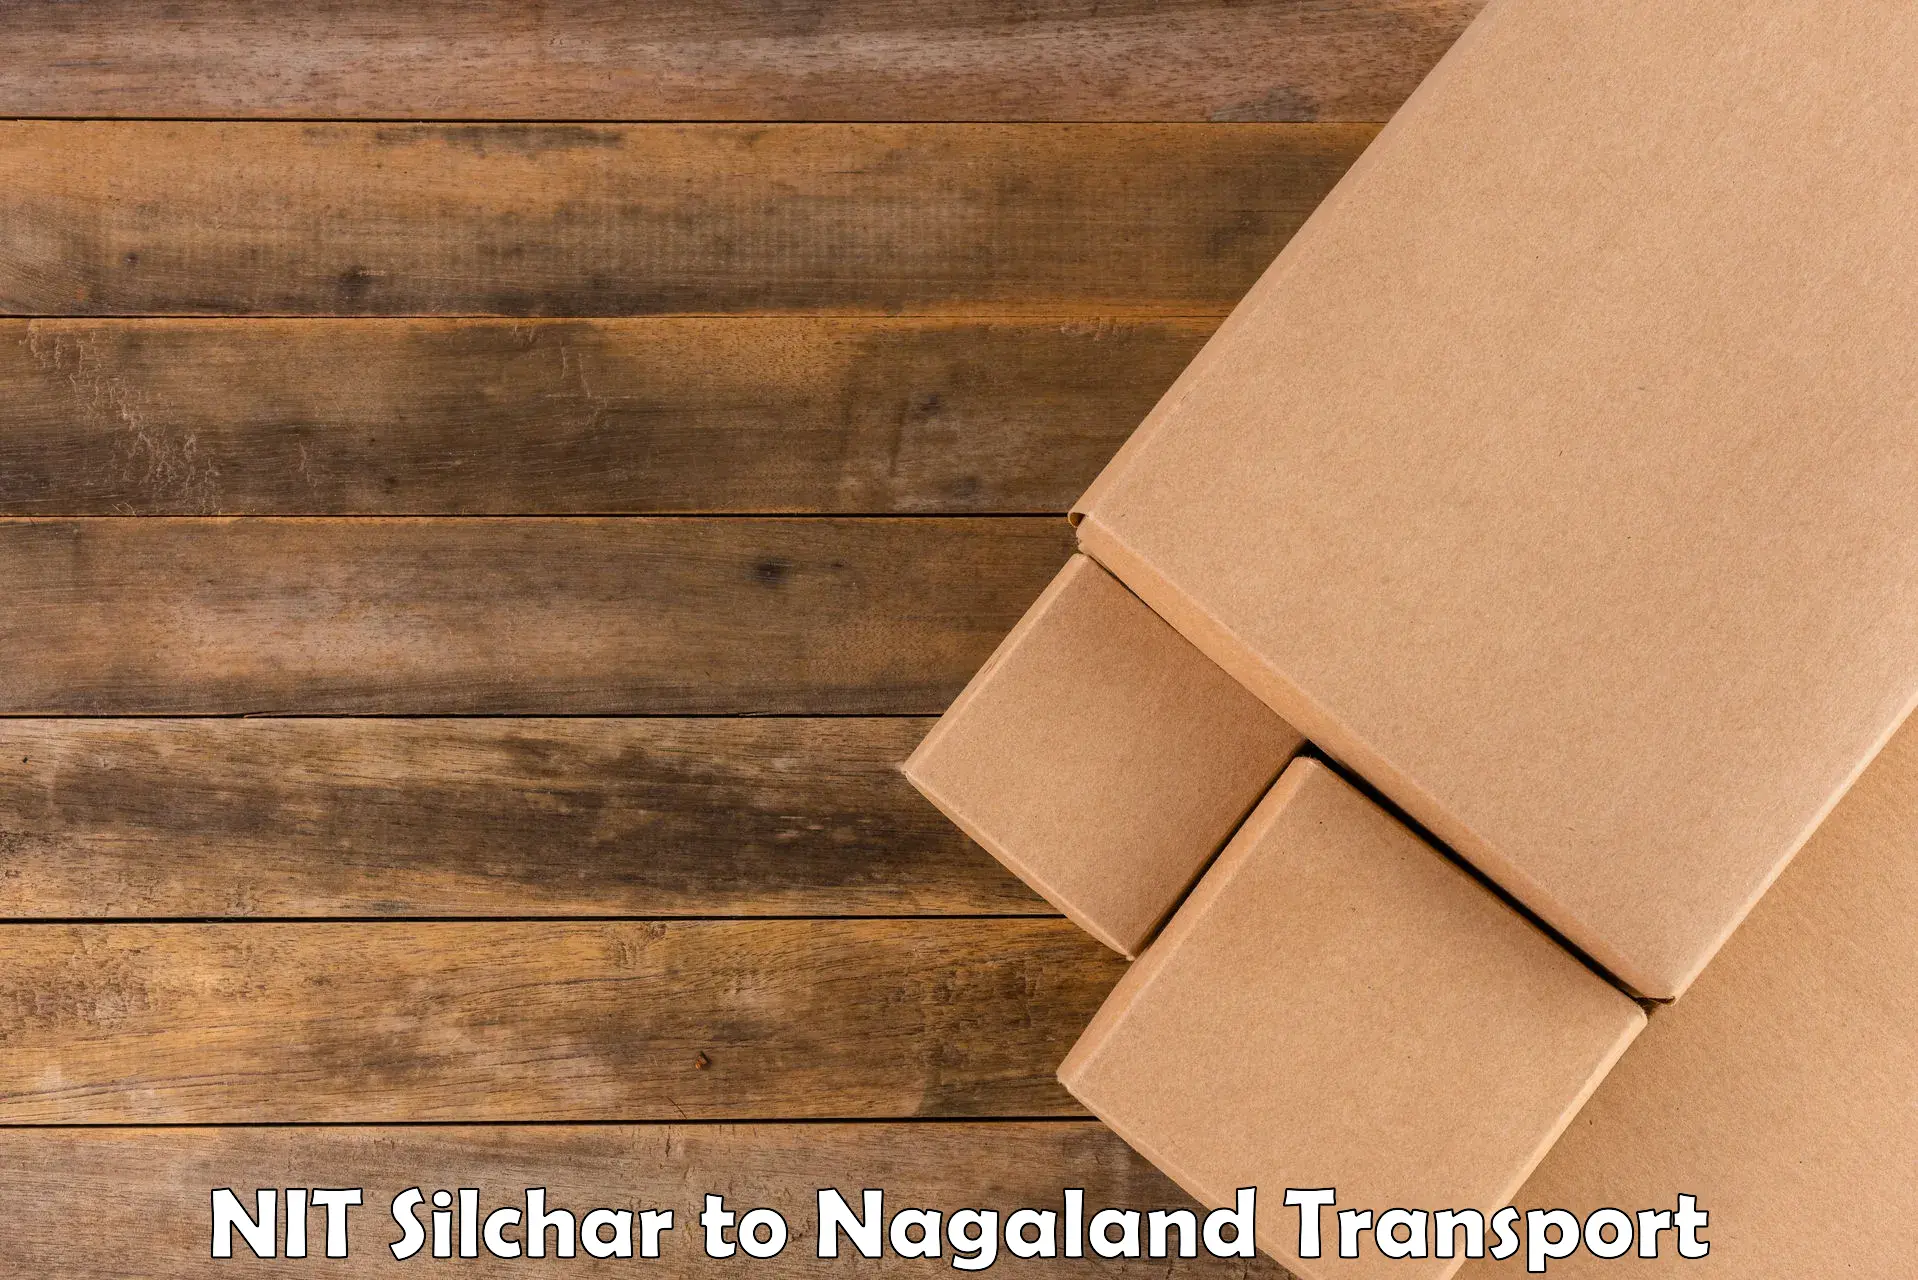 Online transport service NIT Silchar to NIT Nagaland